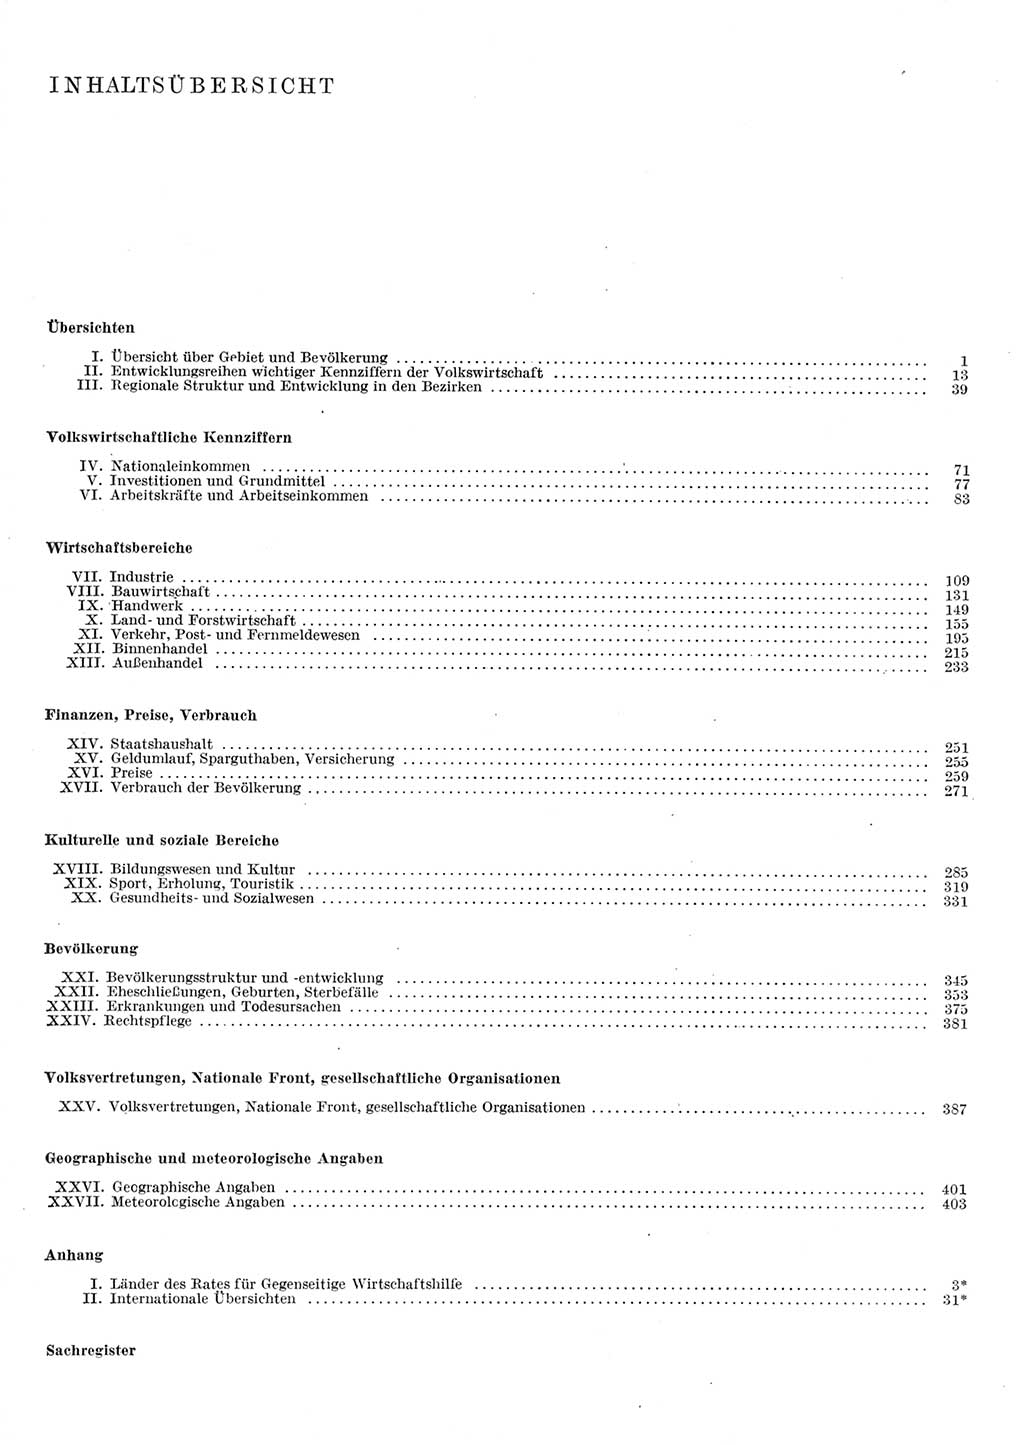 Statistisches Jahrbuch der Deutschen Demokratischen Republik (DDR) 1980, Seite 6 (Stat. Jb. DDR 1980, S. 6)